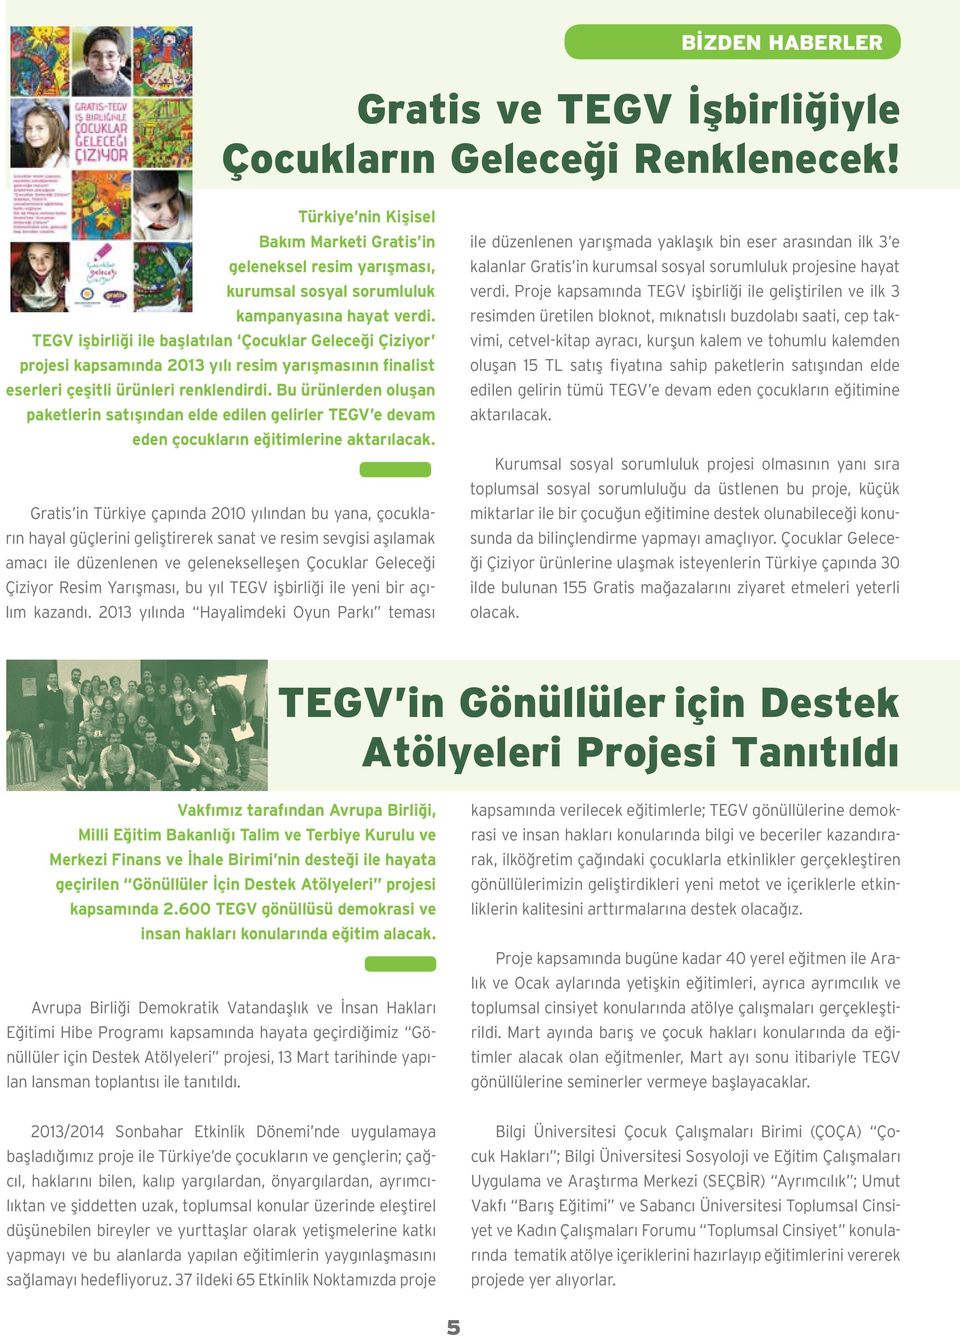 TEGV işbirliği ile başlatılan Çocuklar Geleceği Çiziyor projesi kapsamında 2013 yılı resim yarışmasının finalist eserleri çeşitli ürünleri renklendirdi.